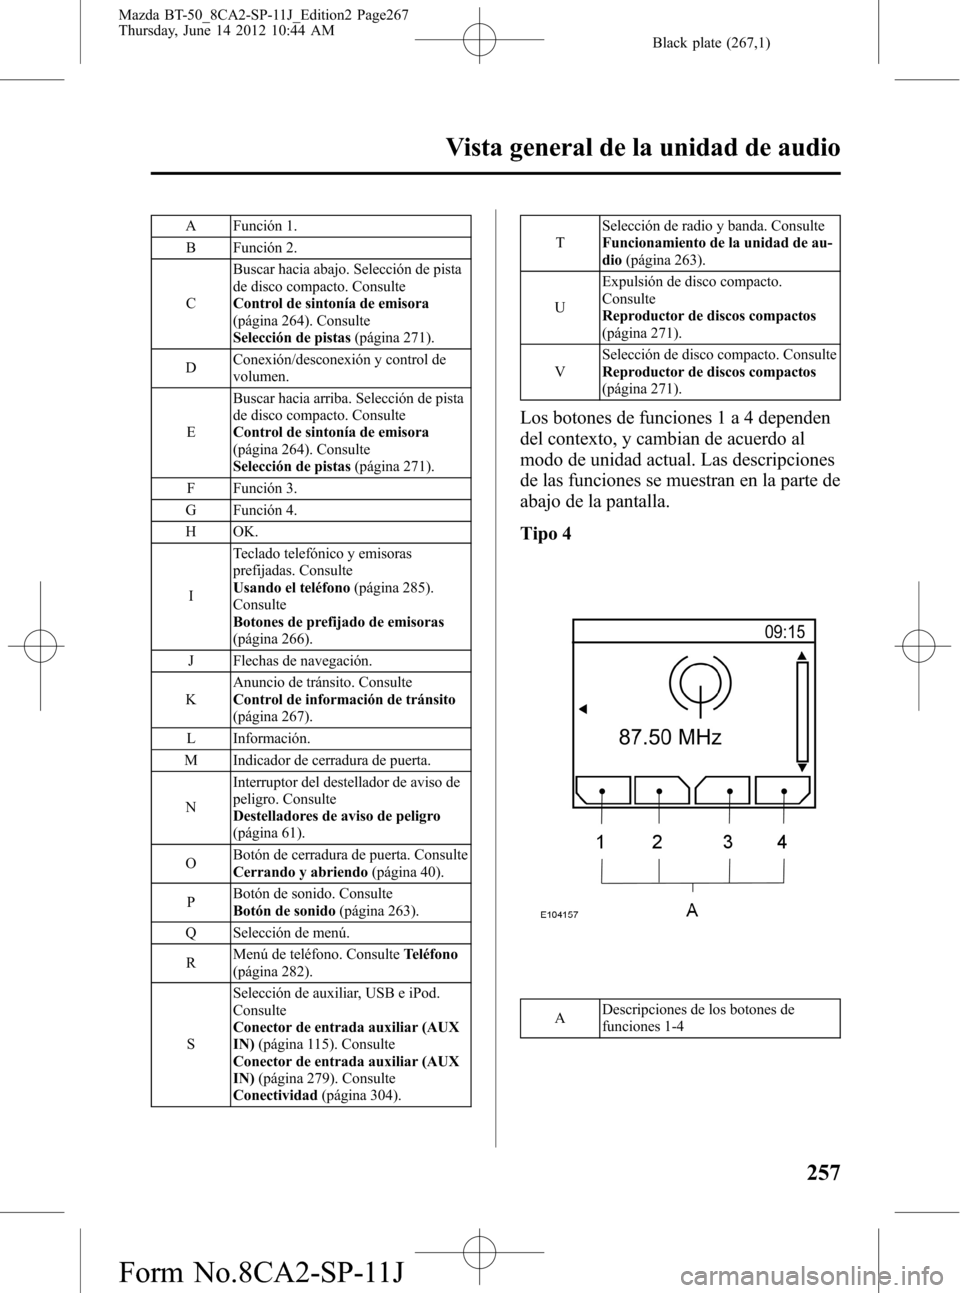 MAZDA MODEL BT-50 2015  Manual del propietario (in Spanish) Black plate (267,1)
A Función 1.
B Función 2.
CBuscar hacia abajo. Selección de pista
de disco compacto. Consulte
Control de sintonía de emisora
(página 264). Consulte
Selección de pistas(págin